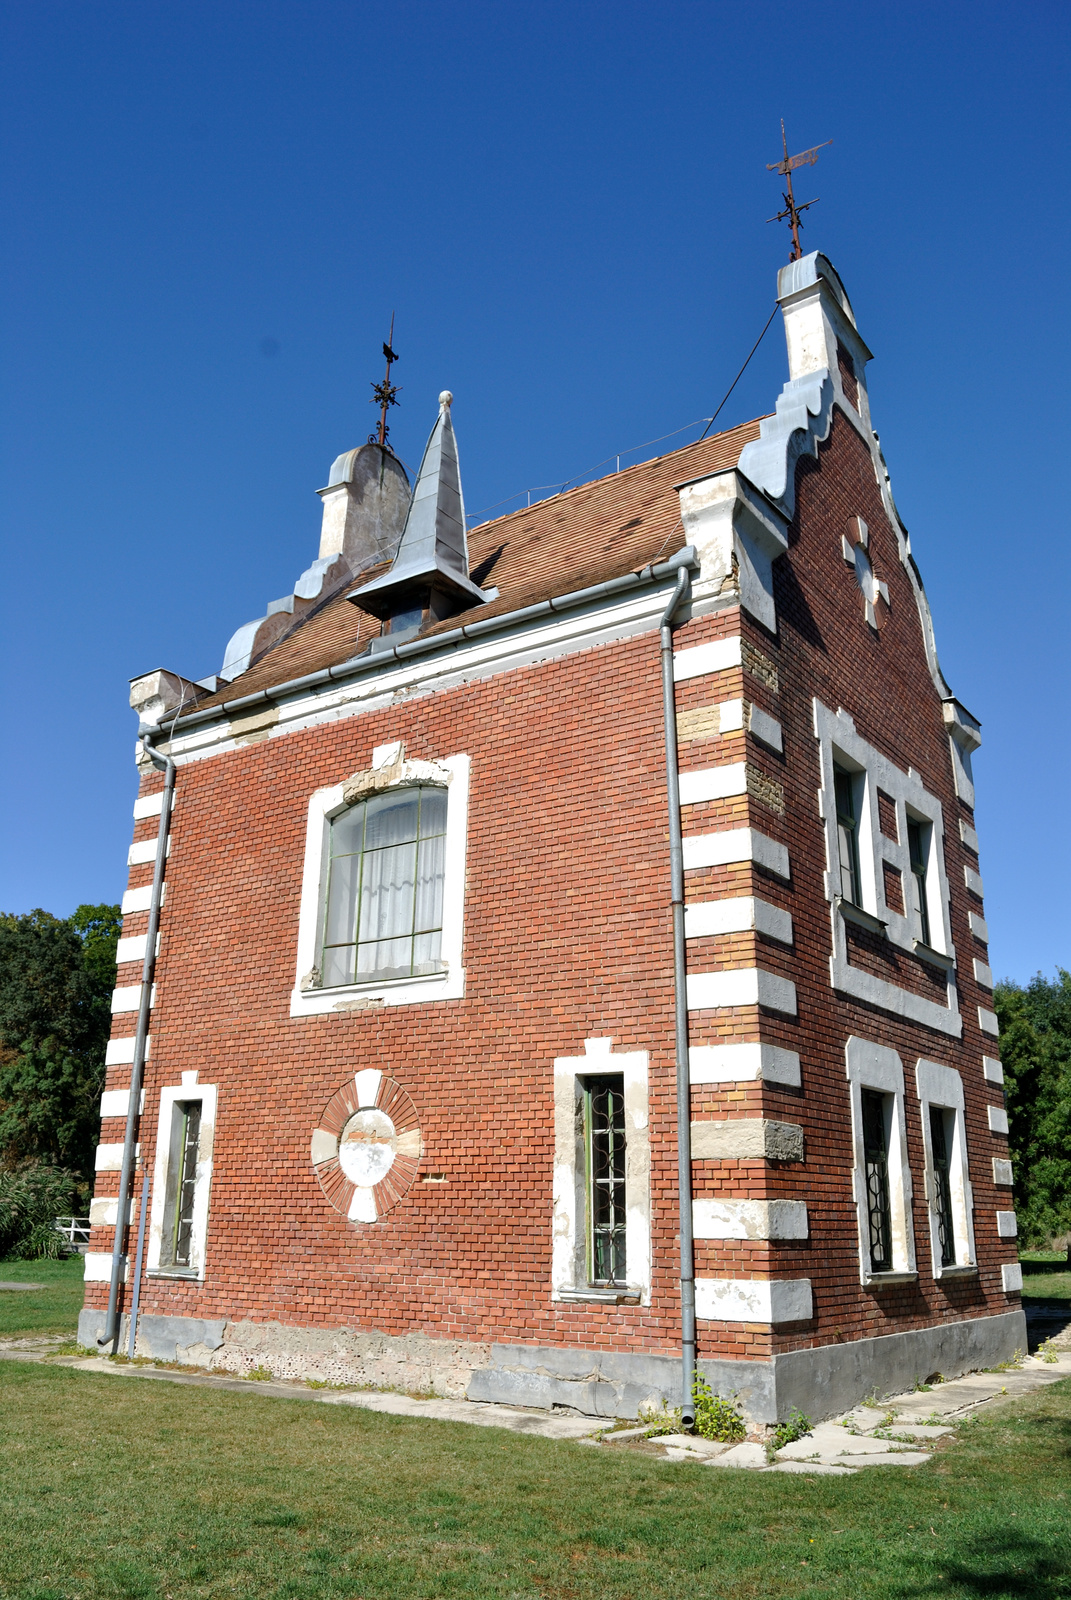 Hollandi ház - Festetics kastély